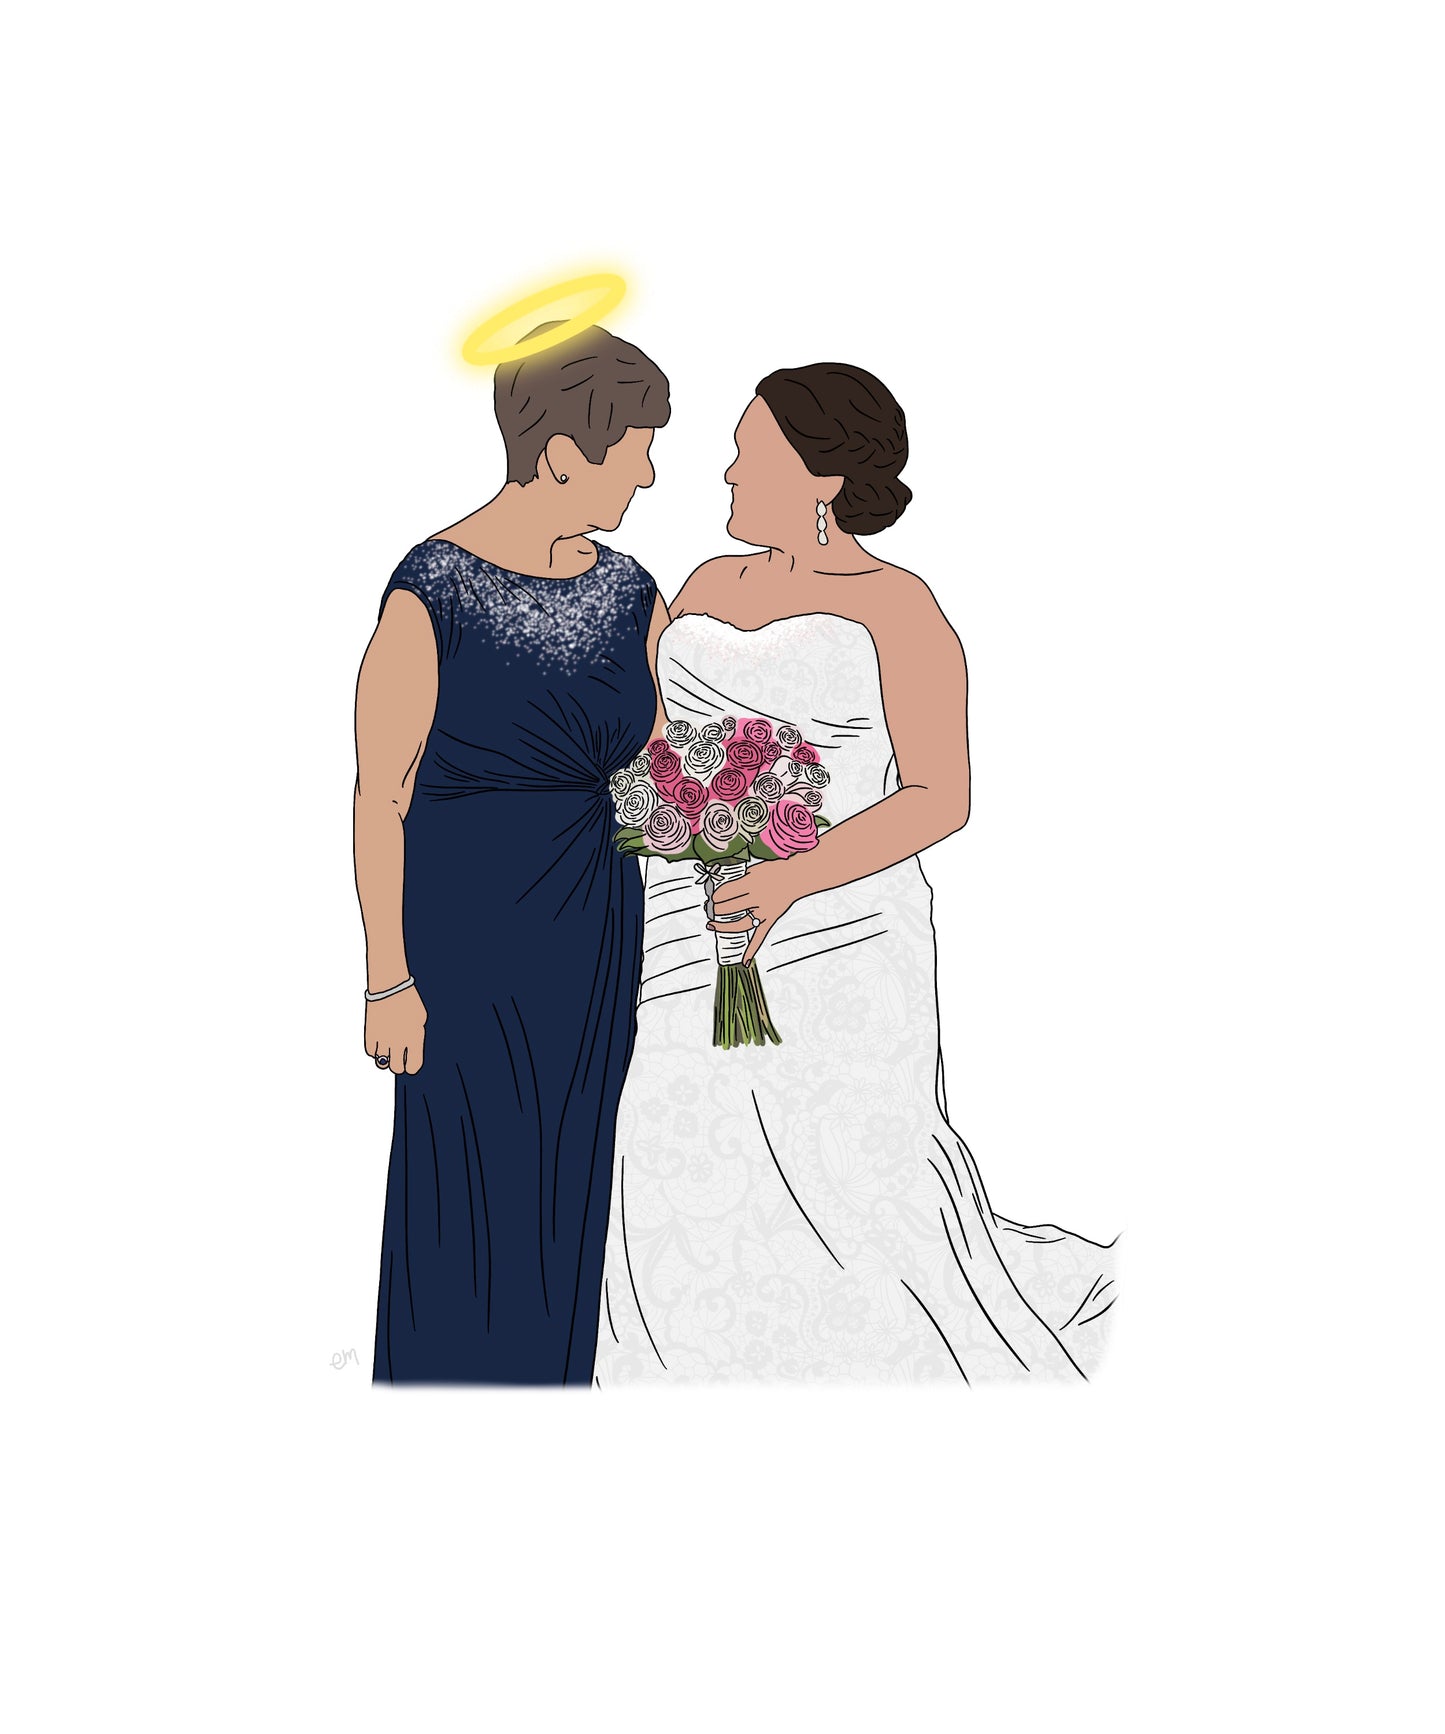 A Custom Wedding Memorial Illustration